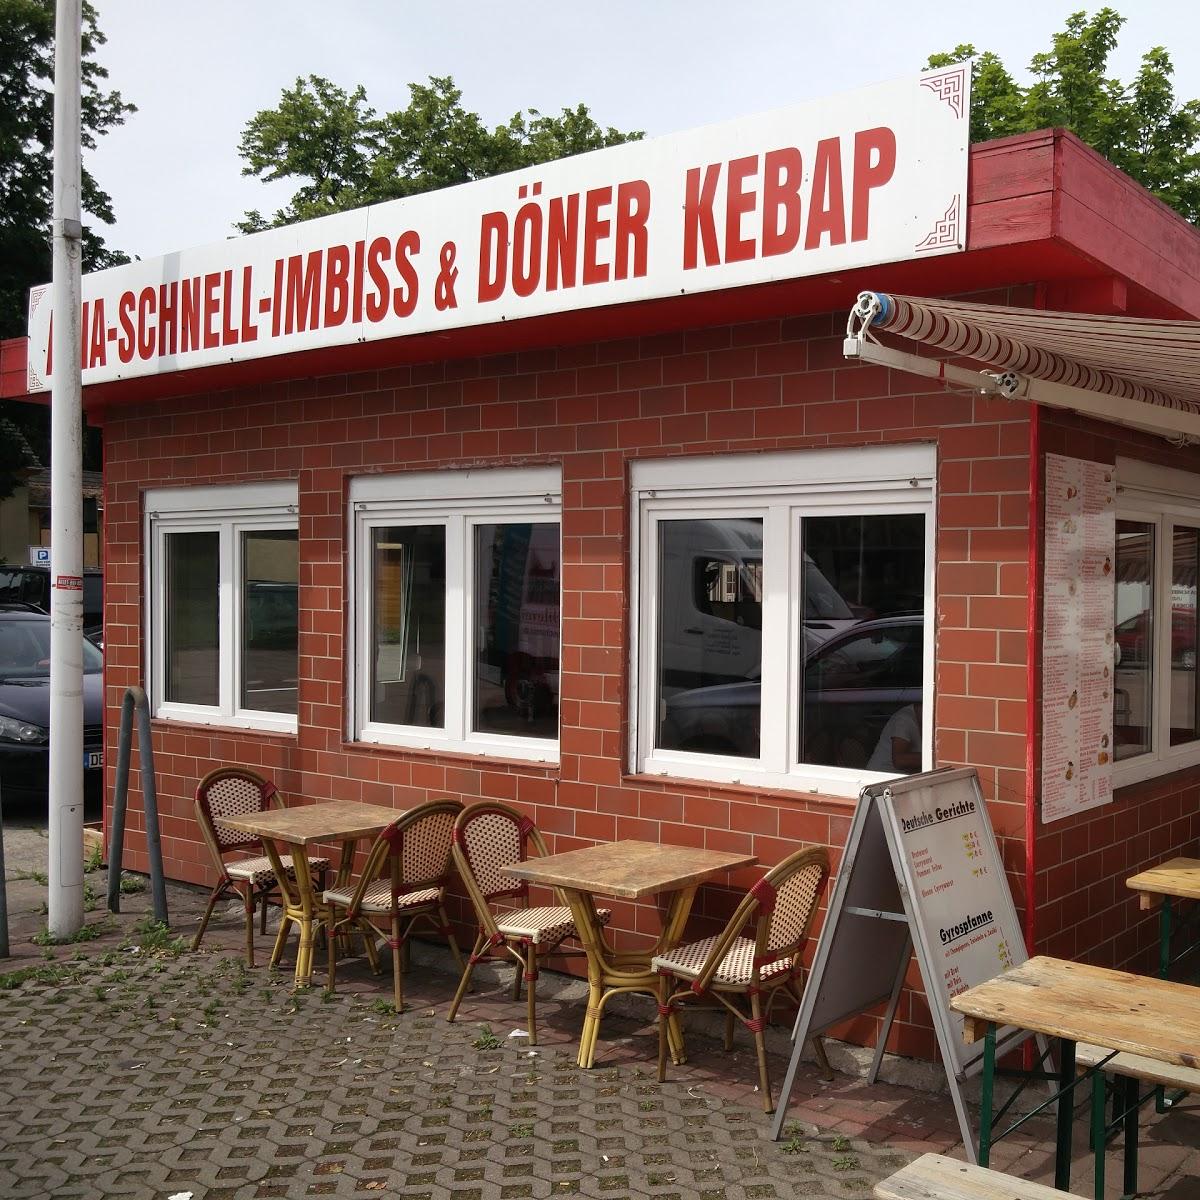 Restaurant "Asia-Schnell-Imbiss & Döner Kebab" in  Schwielowsee